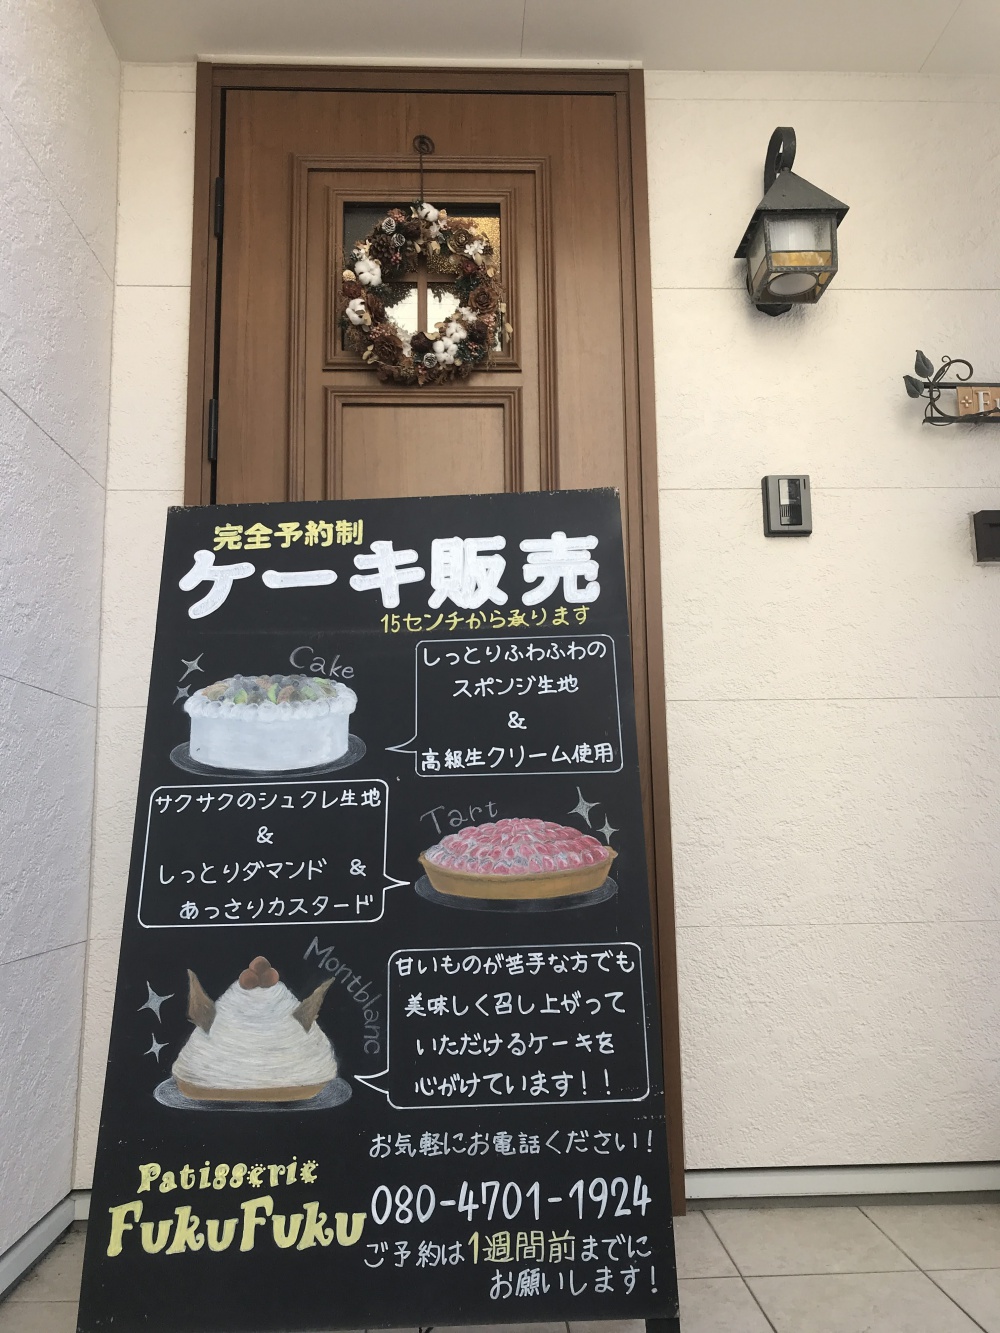 予約制のカフェ「Cafe fukufuku」黒板のケーキメニュー